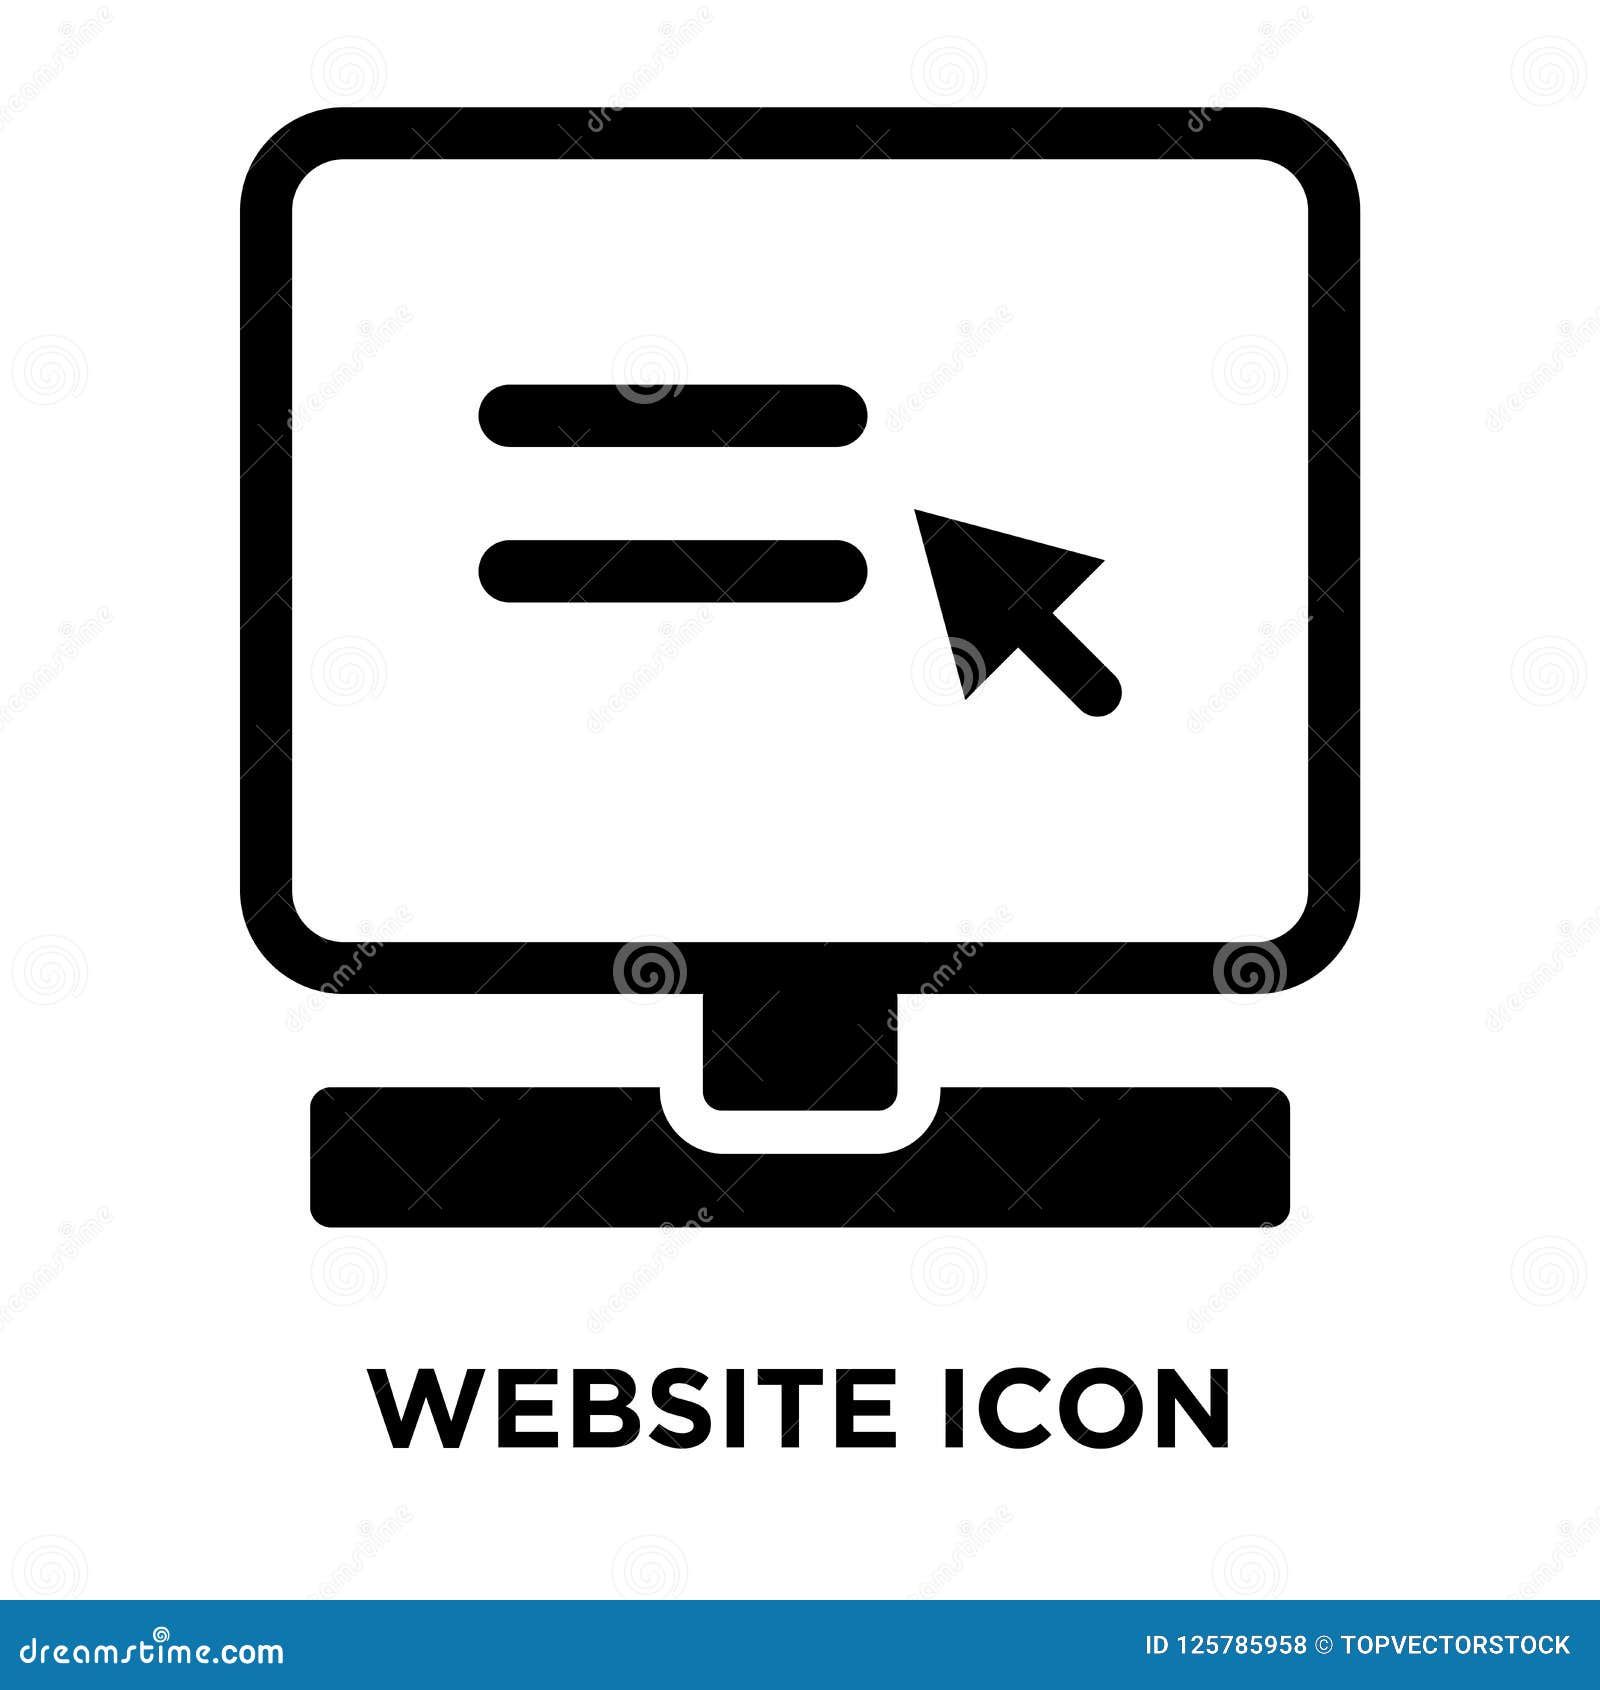 website iconÃÂ    on white background, logo concept